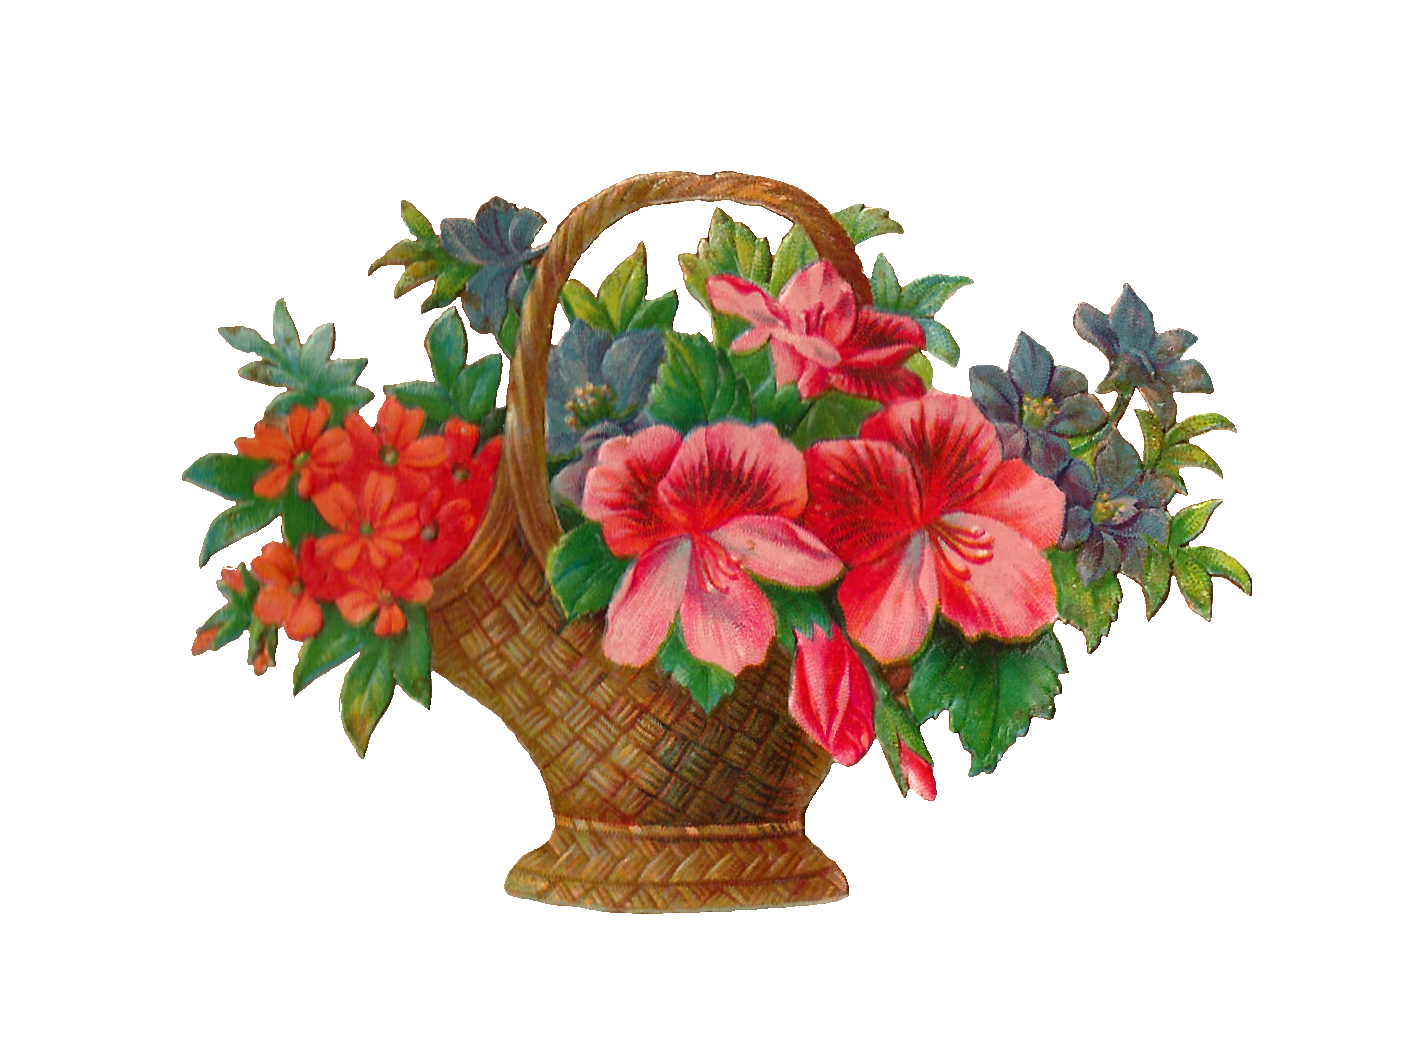 Antique Images: Free Flower Stock Image: Antique Flower Basket ...